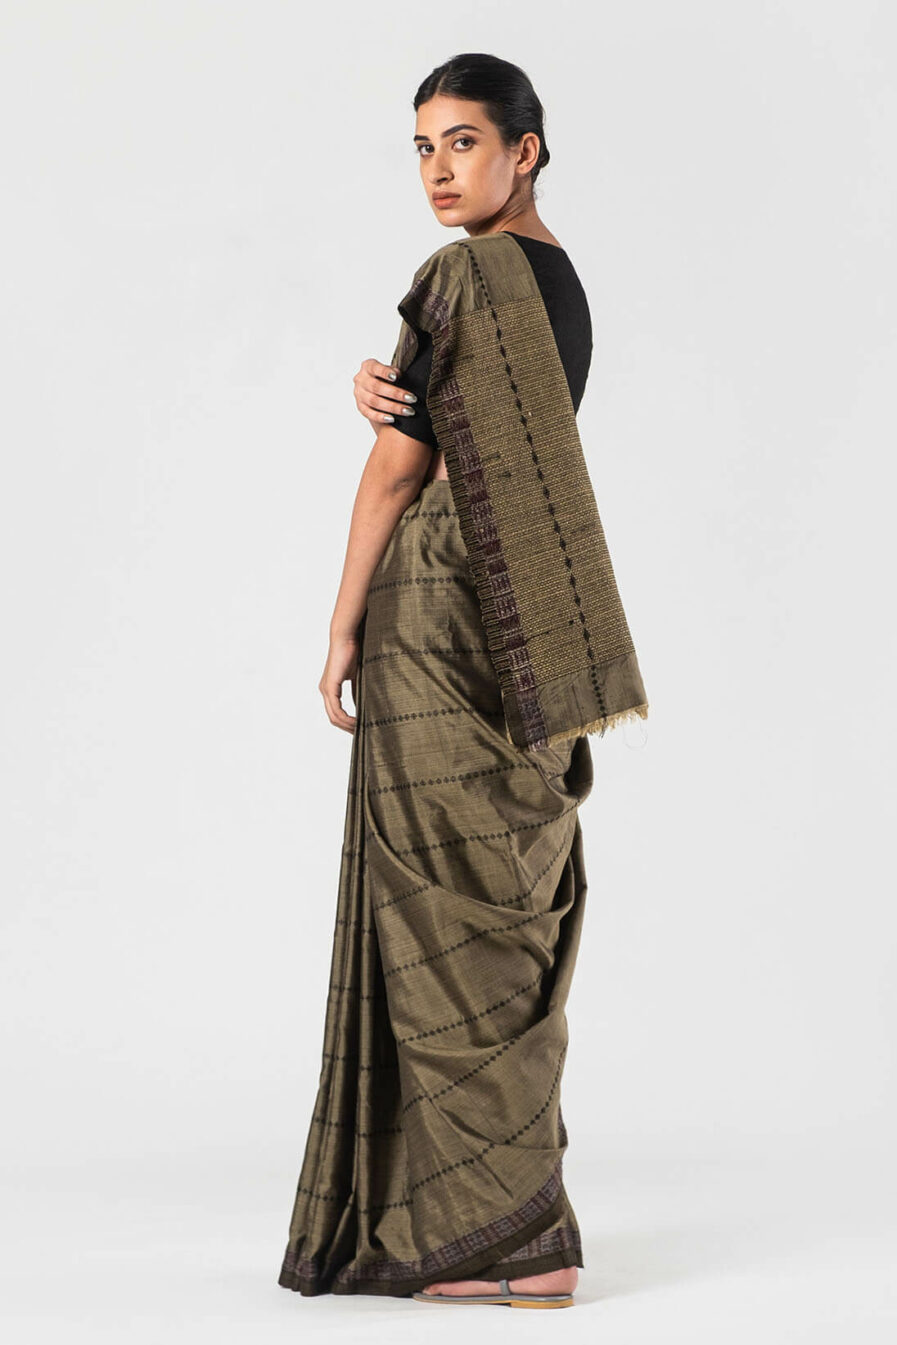 Anavila Khaki Silk jacquard sari